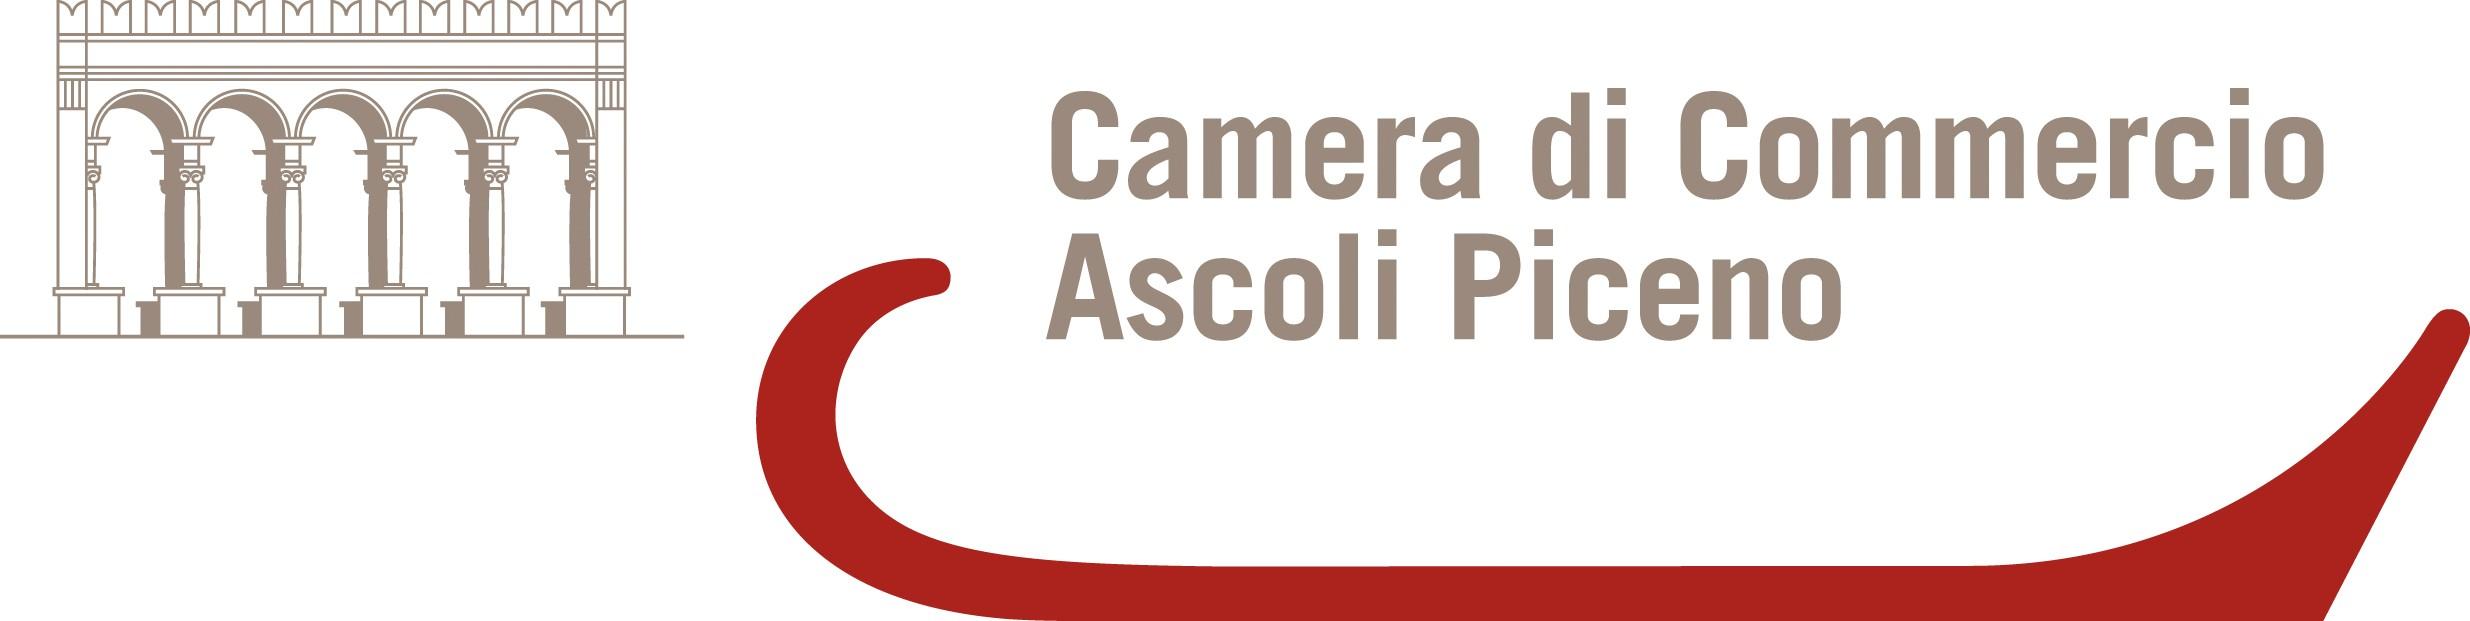 Camera di Commercio di Ascoli Piceno